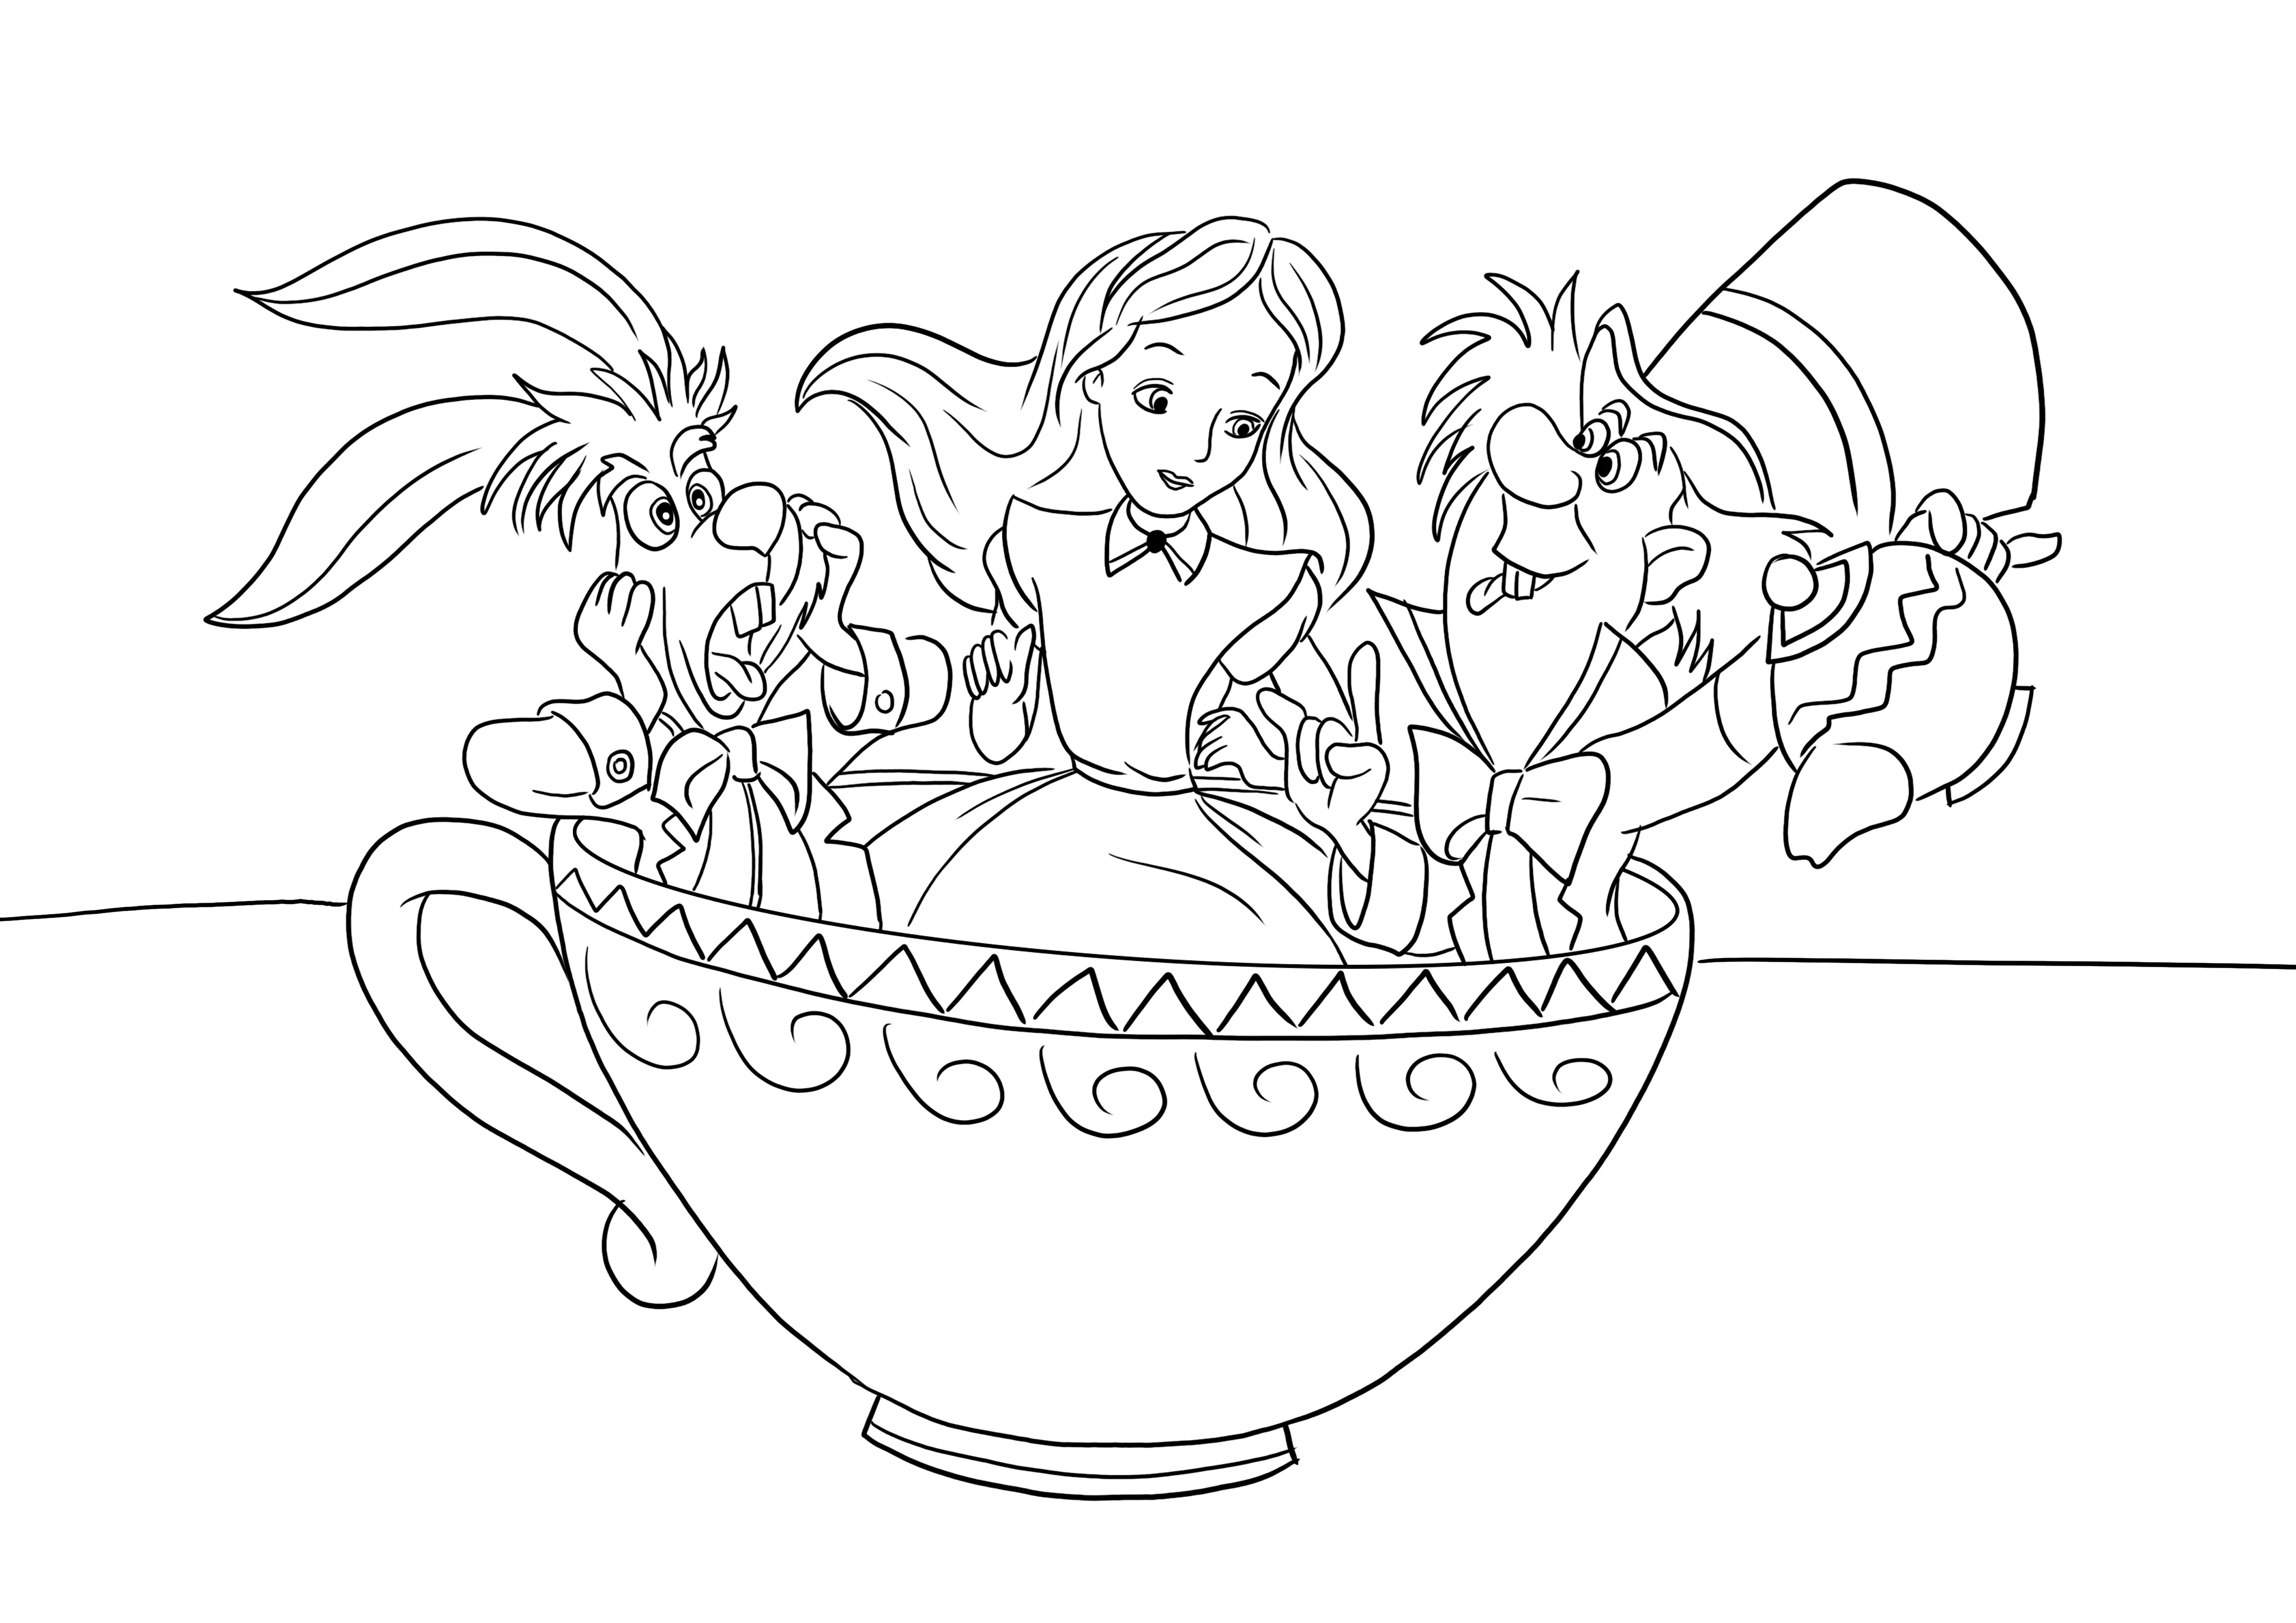 Immagine da colorare Cappellaio matto-Alice-Coniglio in una tazza di tè da scaricare o stampare gratuitamente